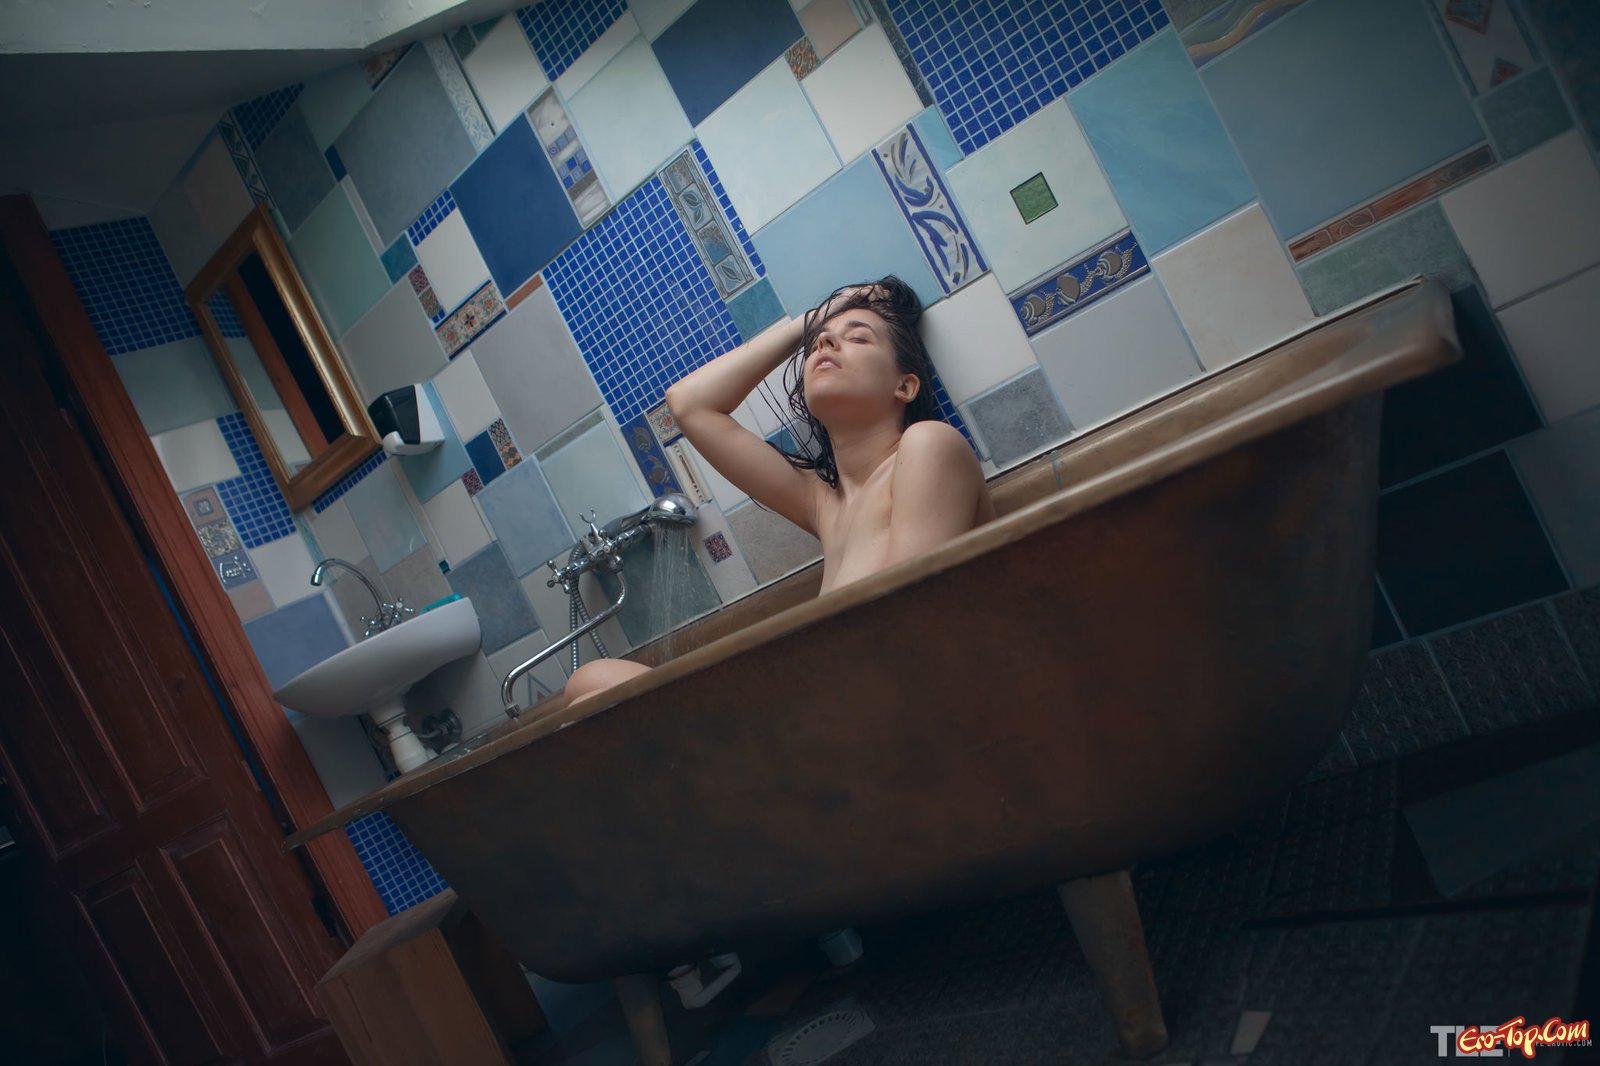 Развратная девушка с натуральной грудью в ванной